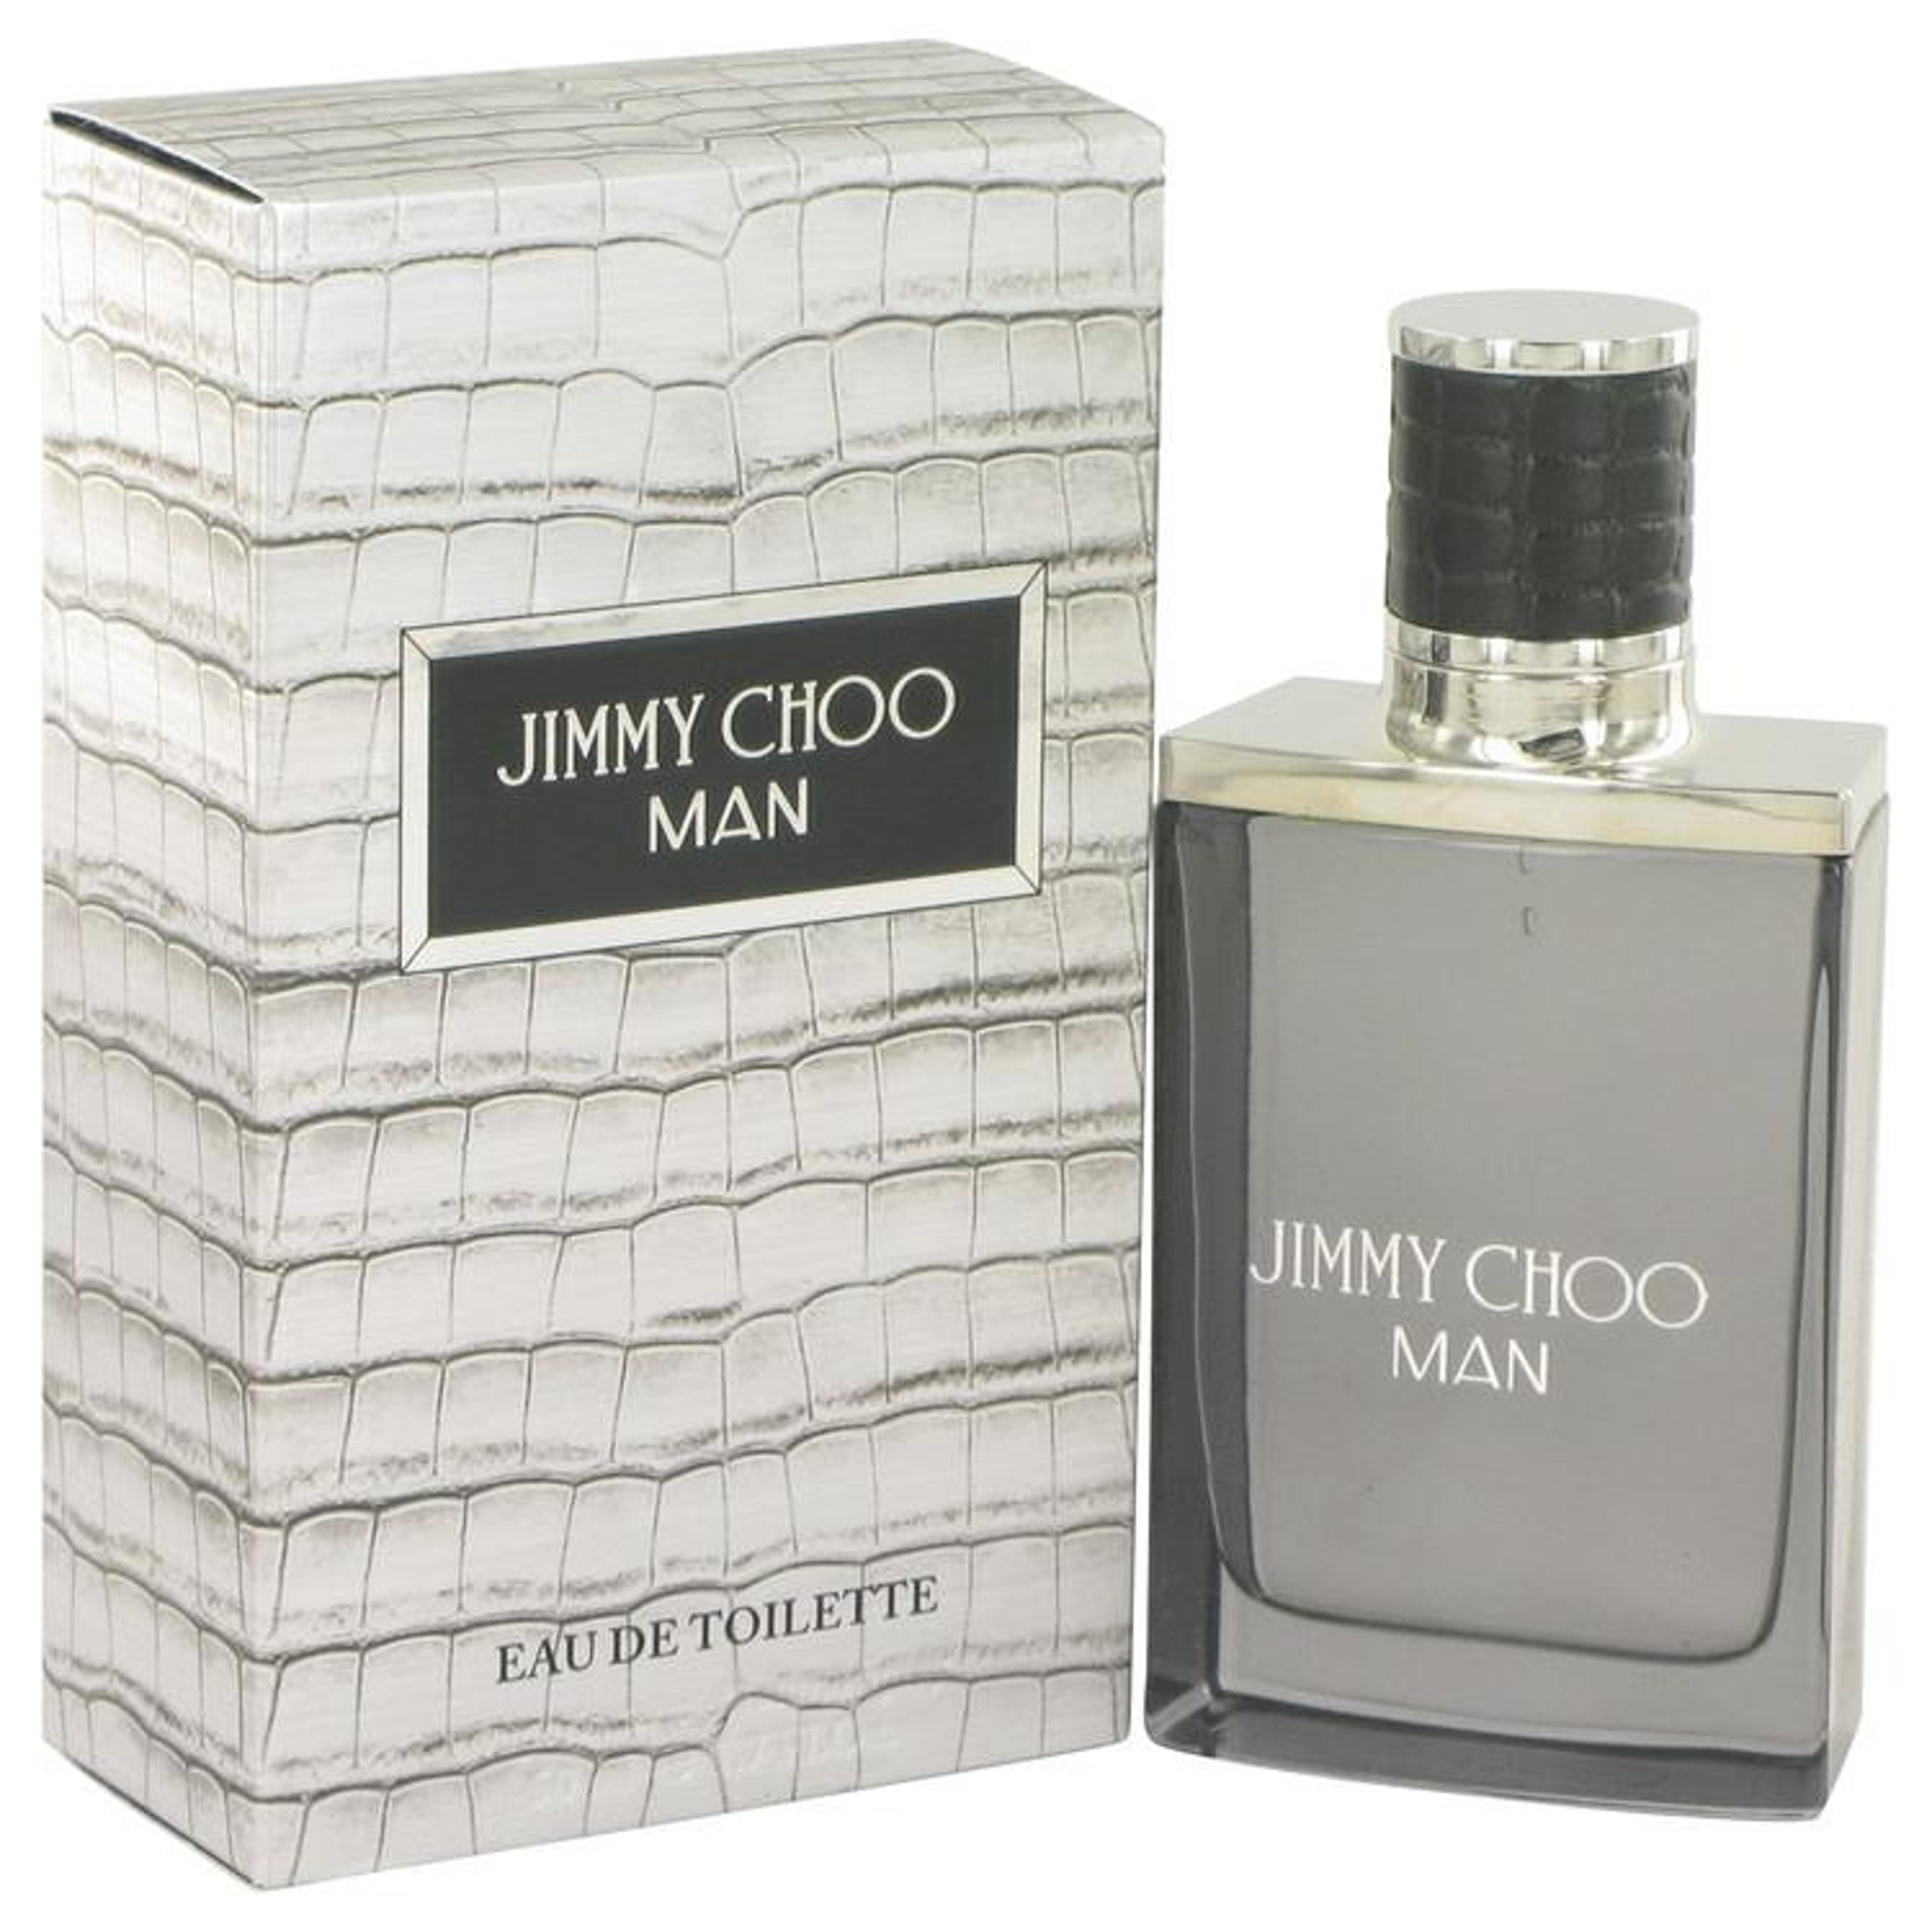 Royall Fragrances Jimmy Choo Jimmy Choo Man By Jimmy Choo Eau De Toilette Spray 1.7 oz